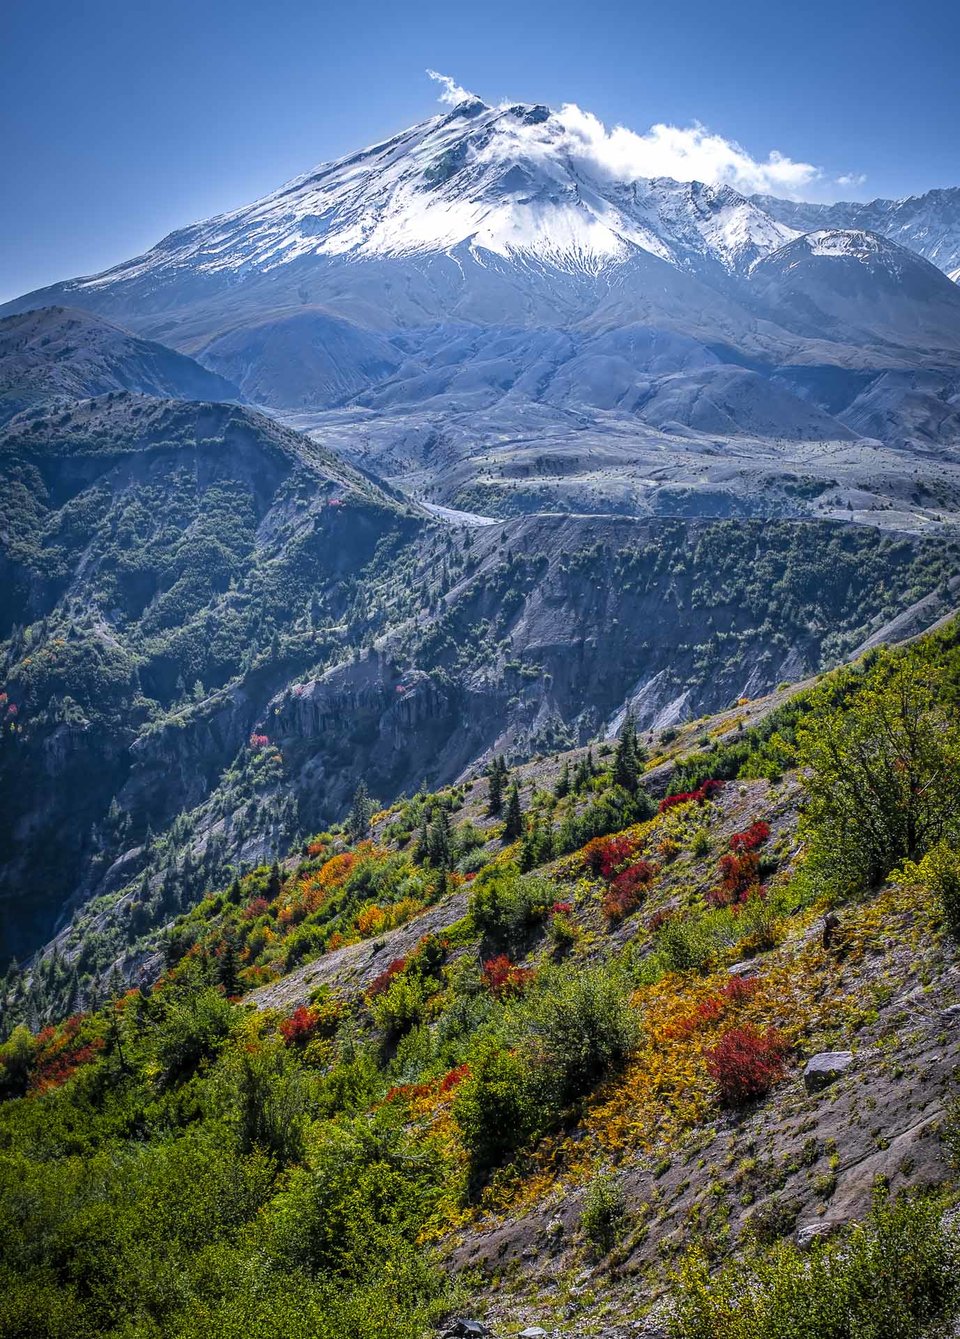 Mount St. Helens from Windy Ridge, WA